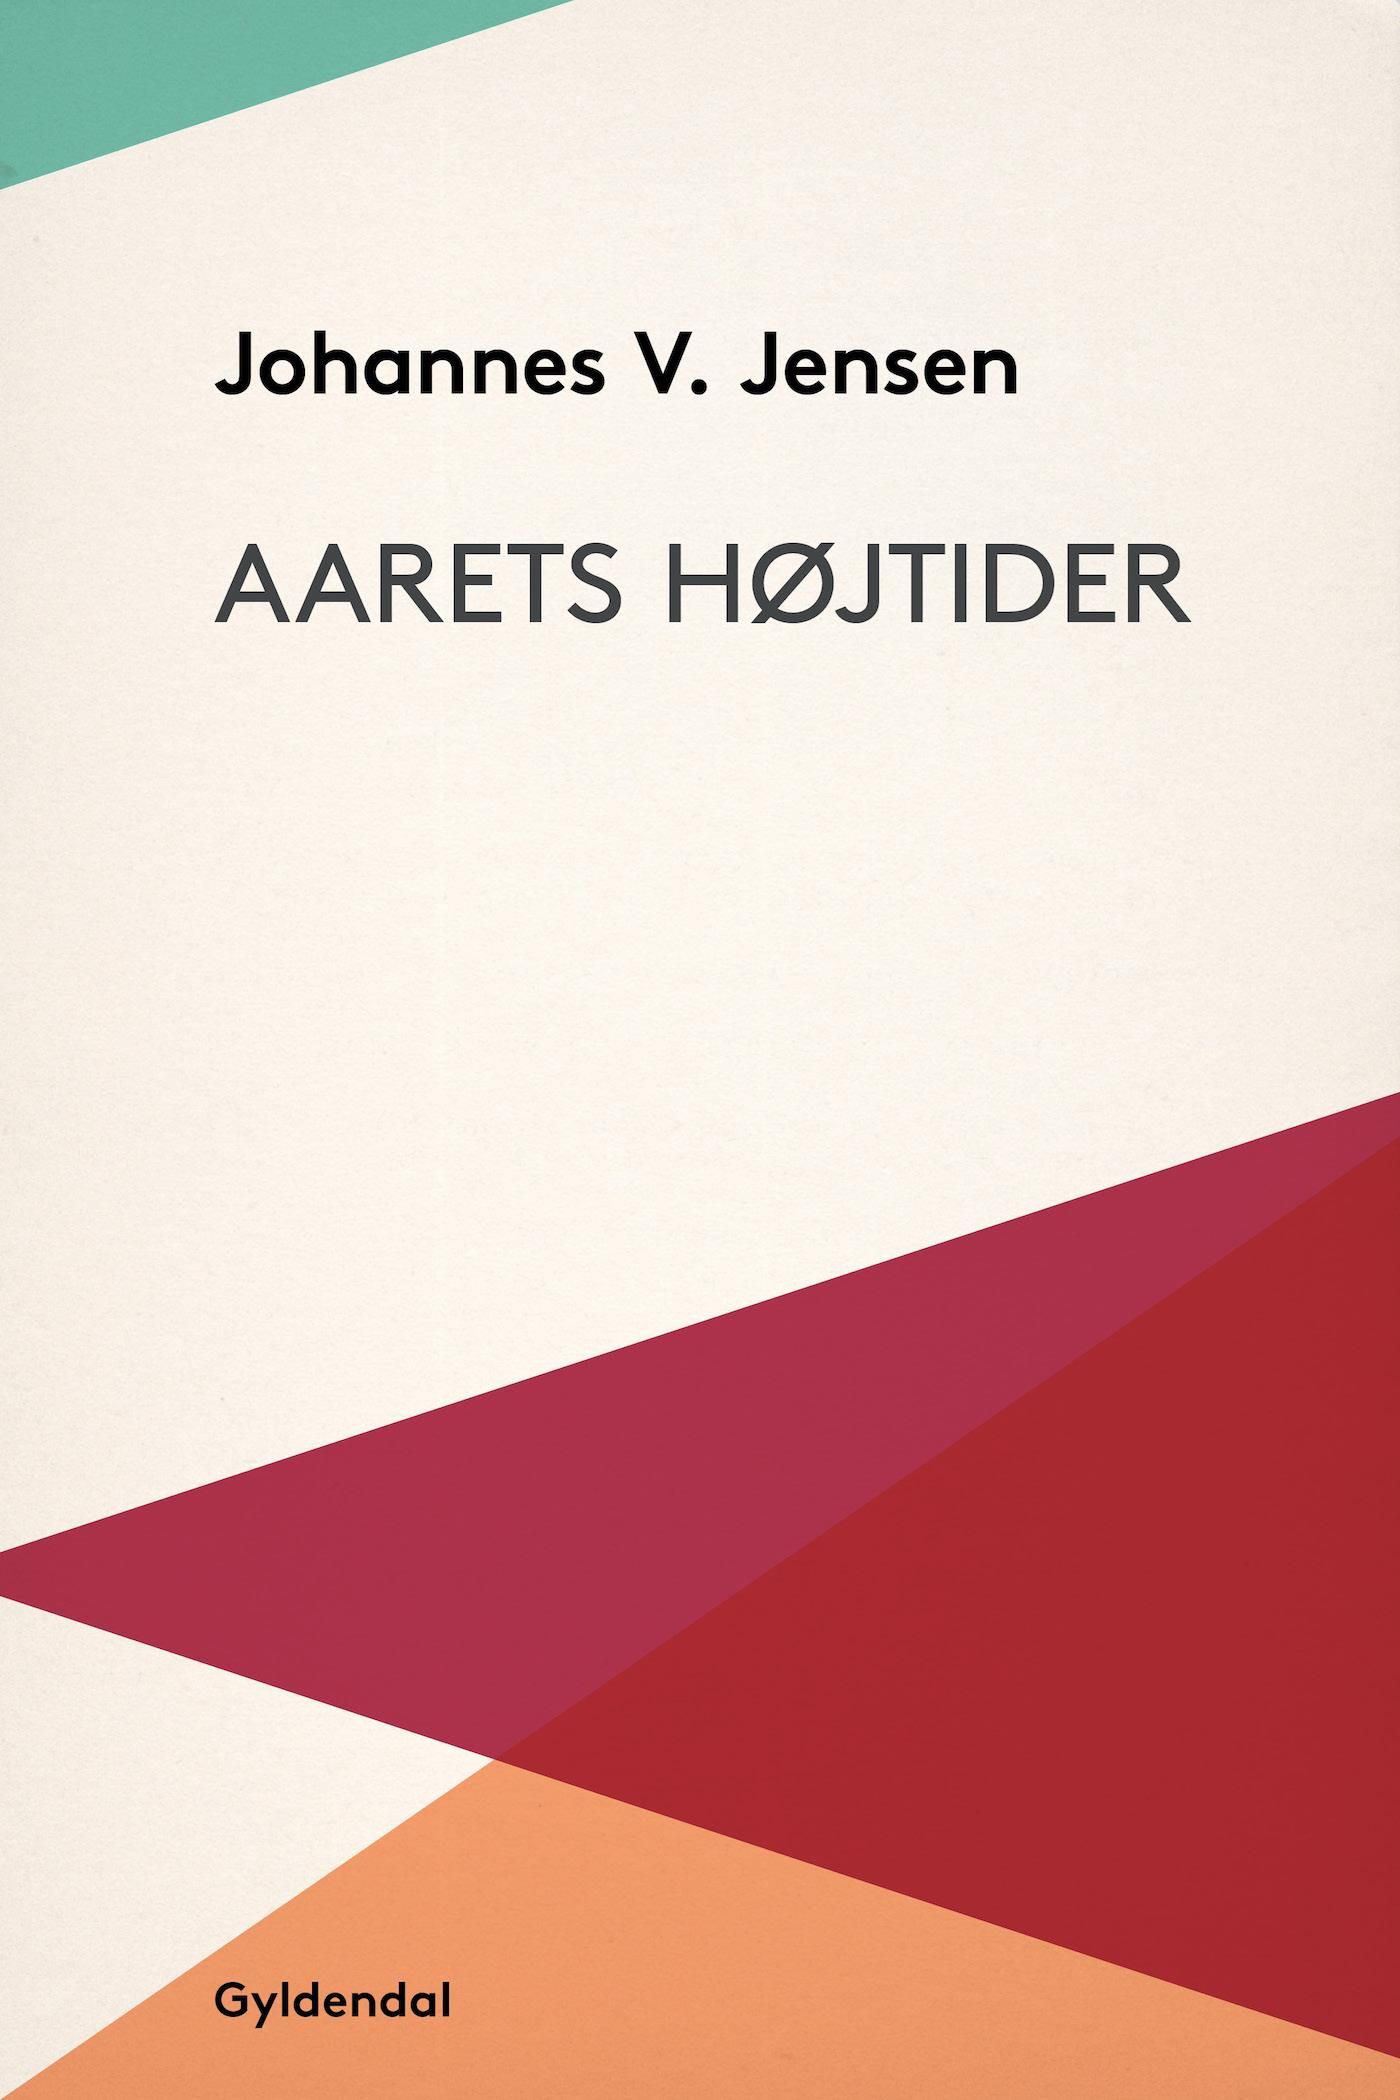 Aarets højtider, eBook by Johannes V. Jensen